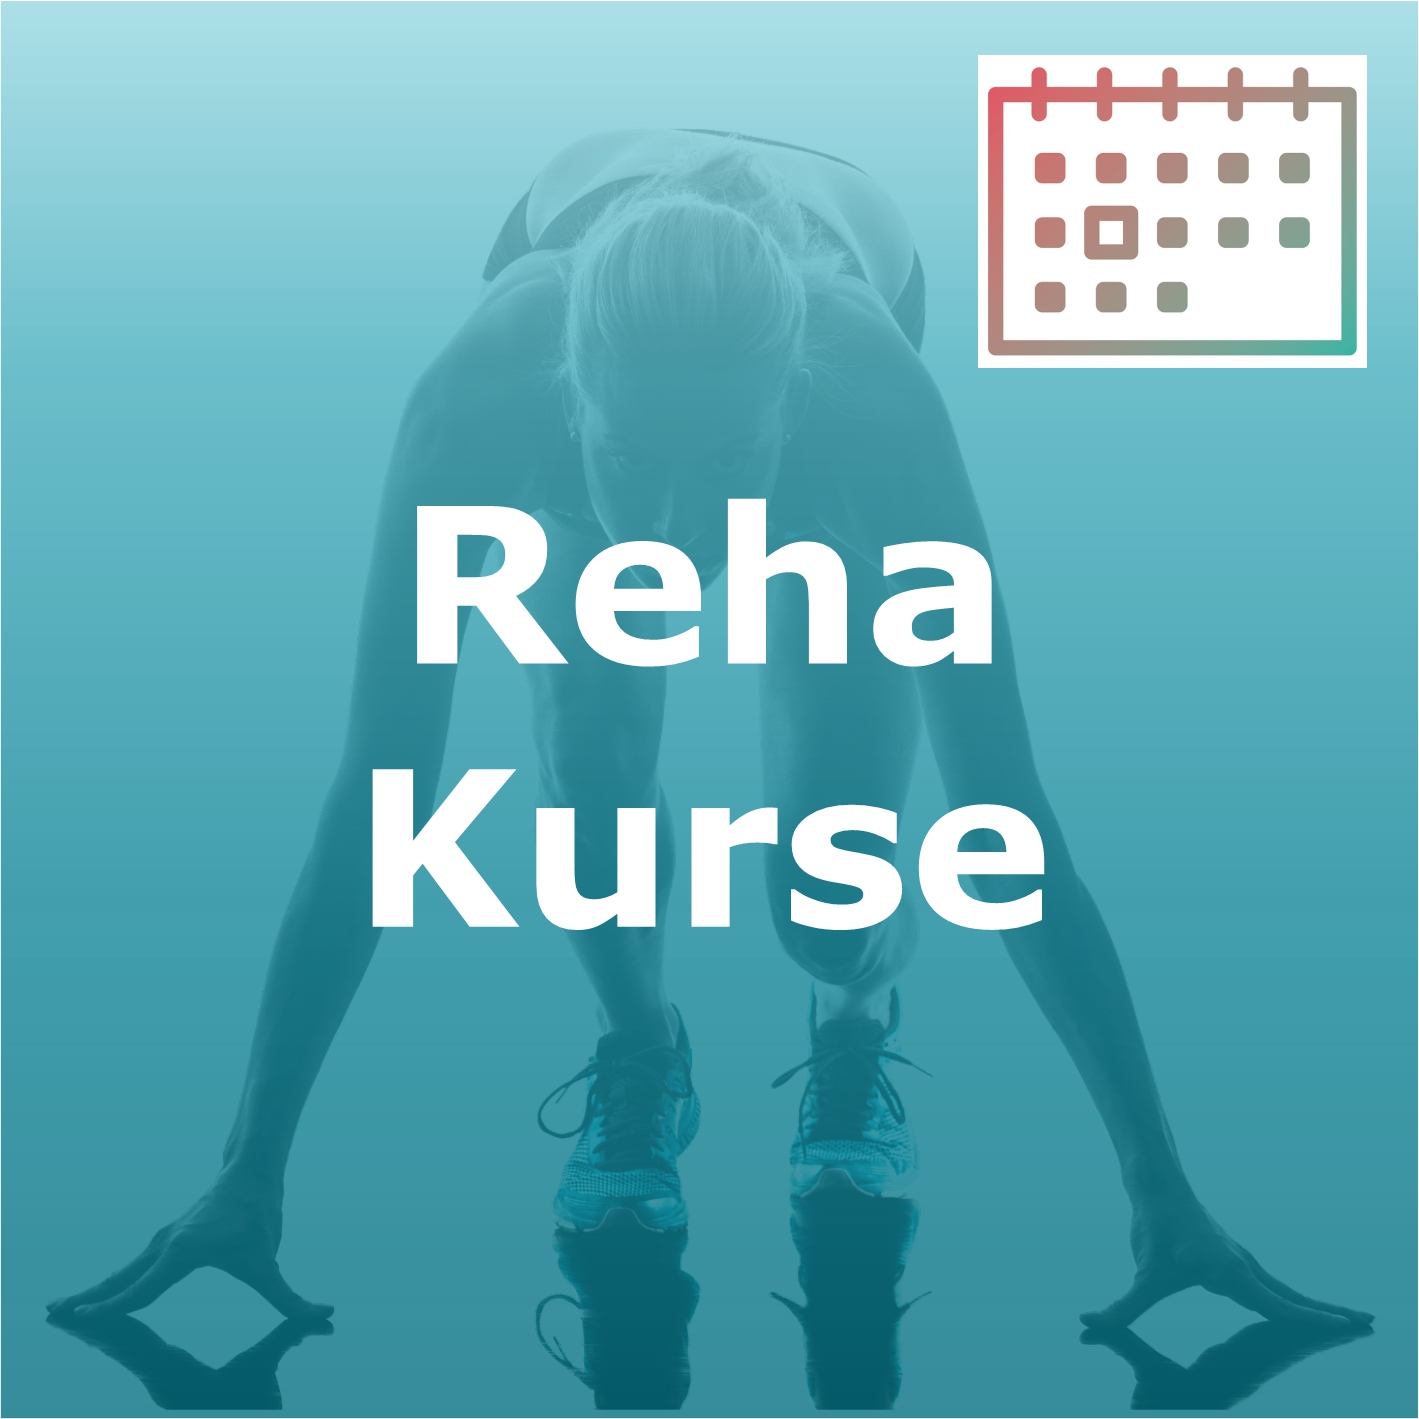 Reha Kurse